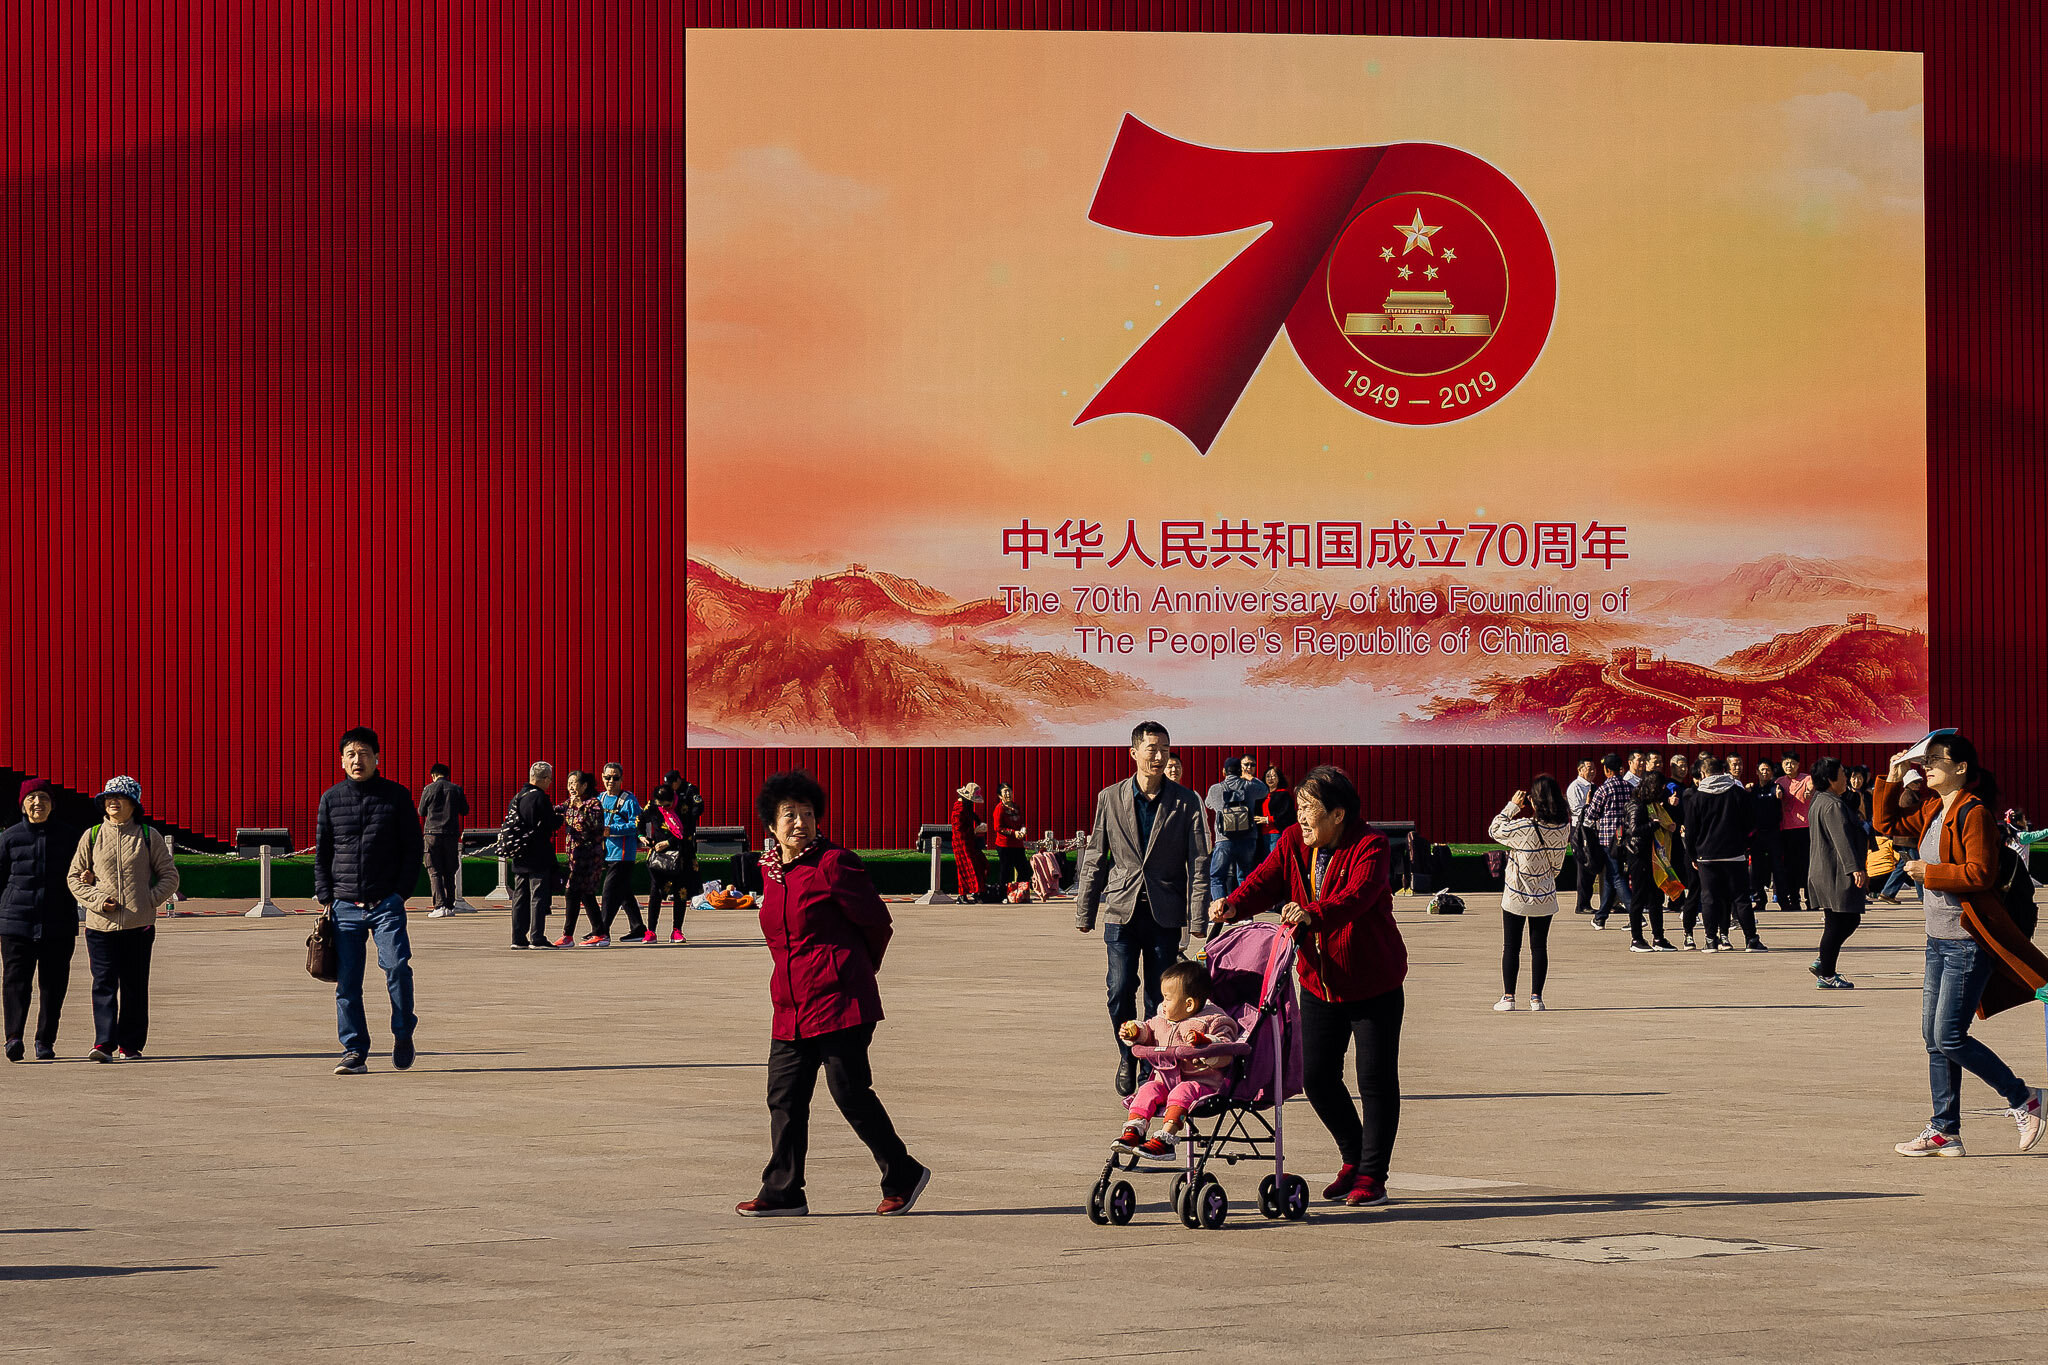 Beijing 2020 Website22.jpg